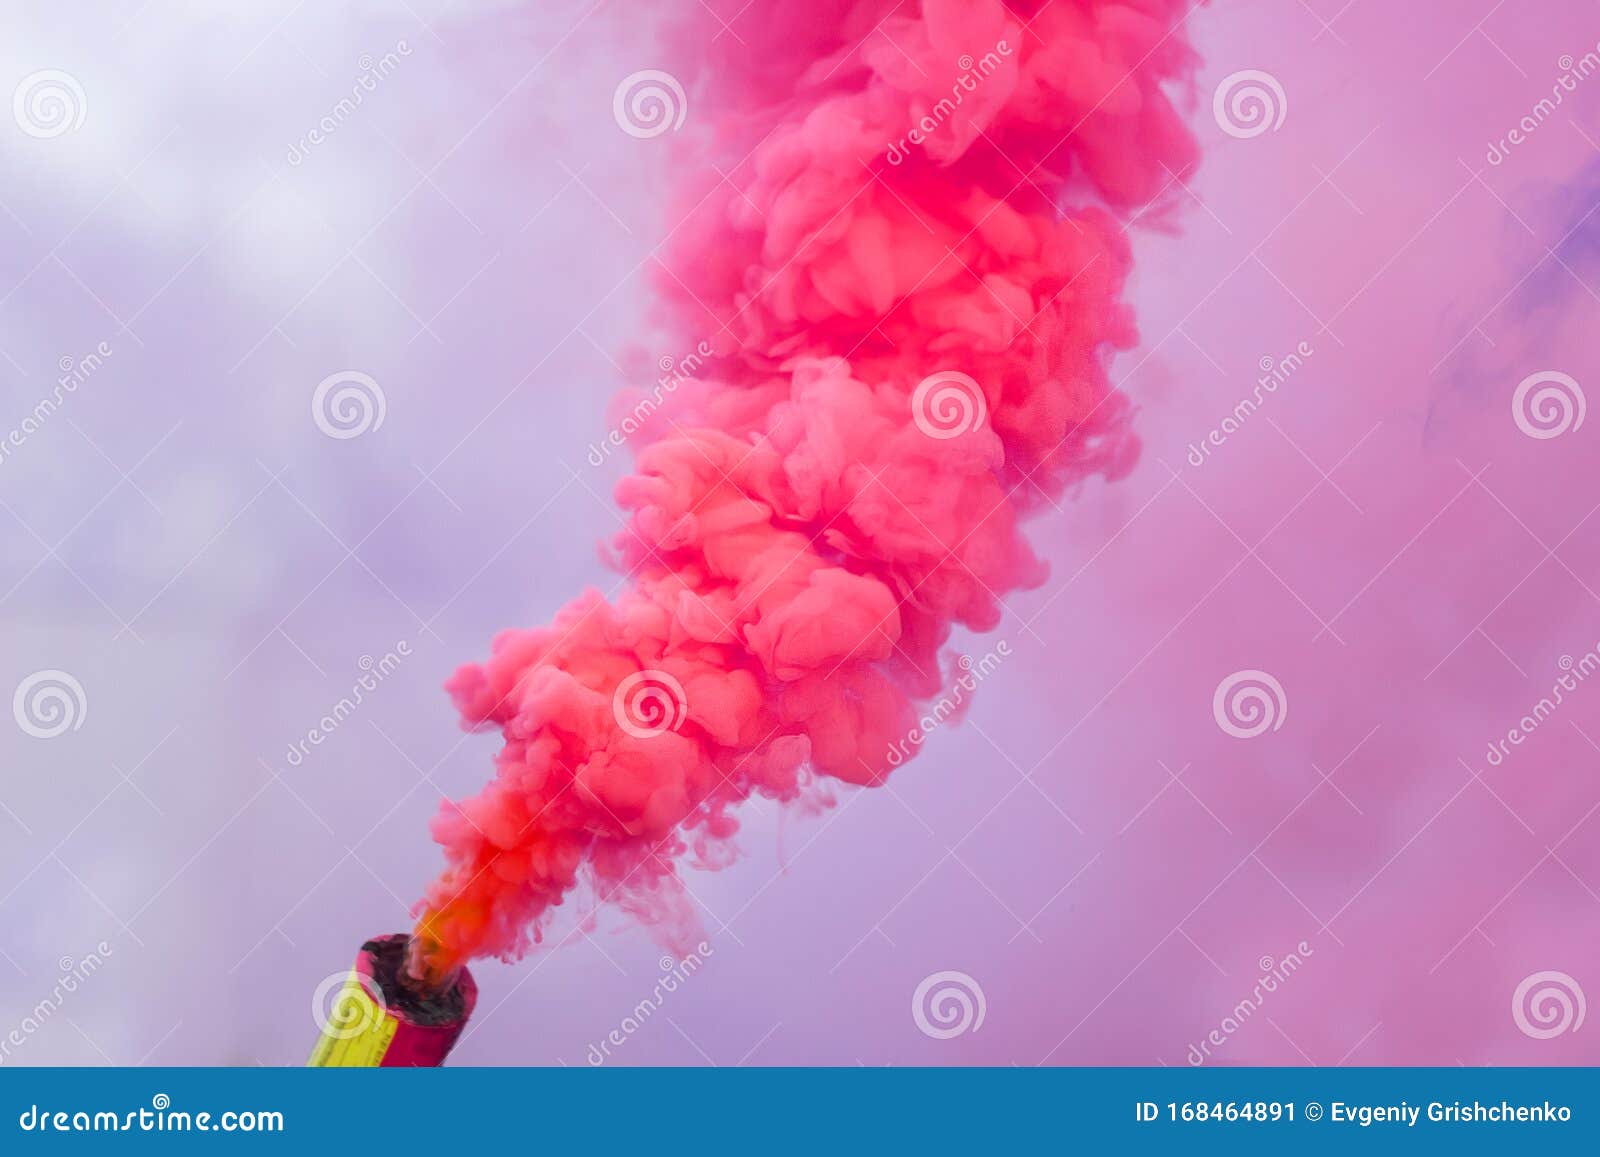 Bombas de humo de color 